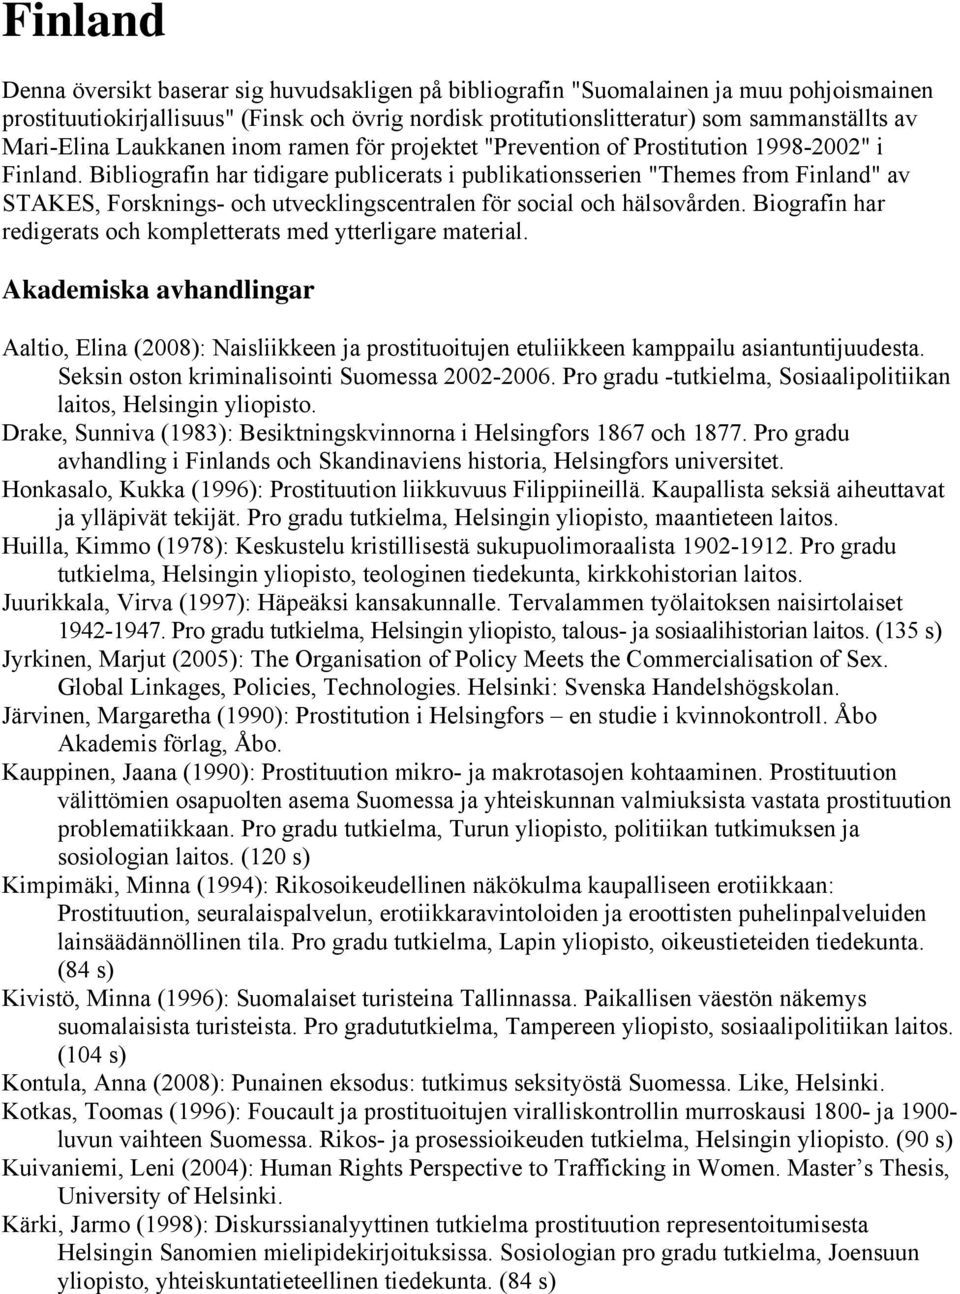 Bibliografin har tidigare publicerats i publikationsserien "Themes from Finland" av STAKES, Forsknings- och utvecklingscentralen för social och hälsovården.